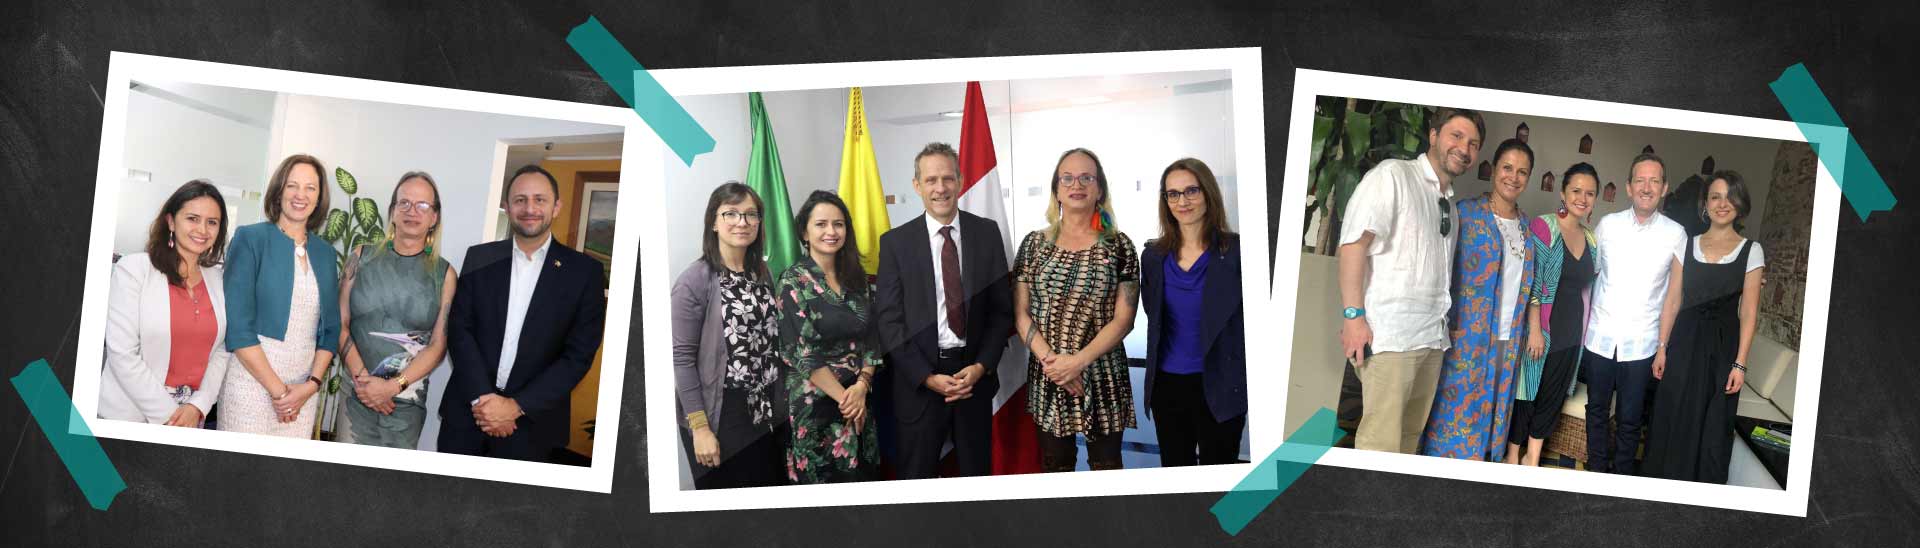 Postales de las reuniones entre los embajadores de Canadá, Austrlia y Reino Unido con miembros de la comunidad eanista.